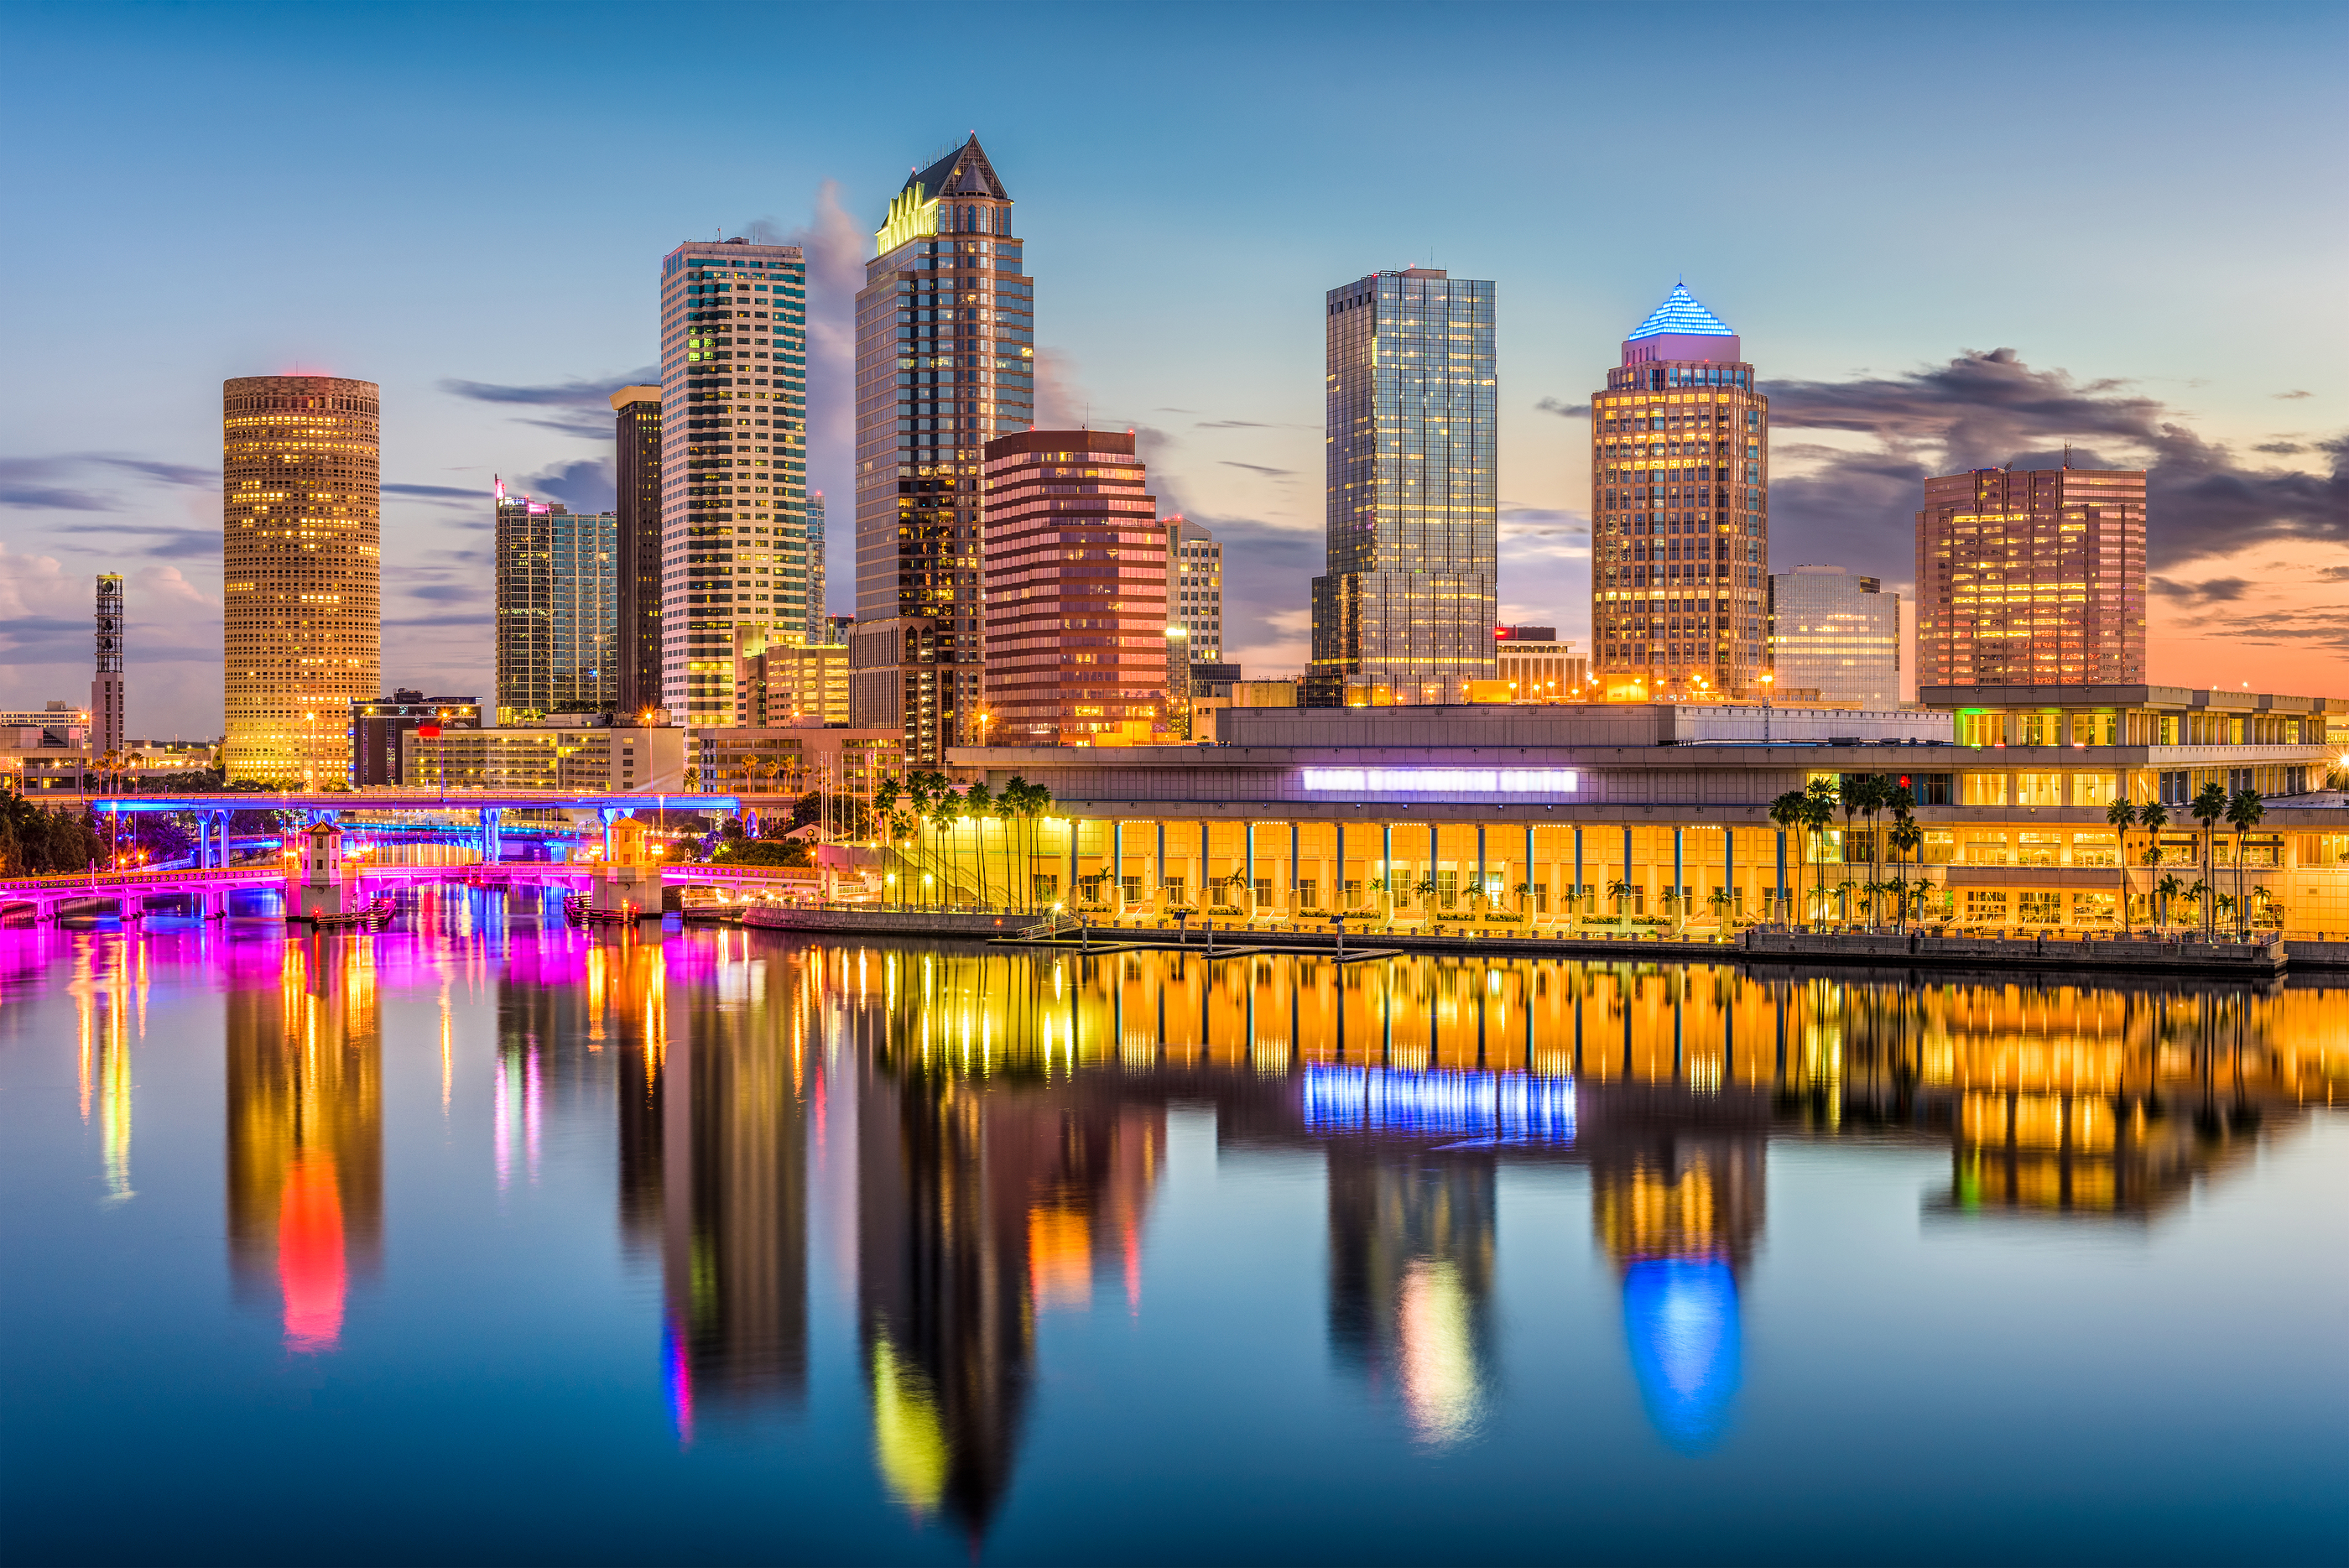  Tampa  Florida USA  downtown skyline on the river 